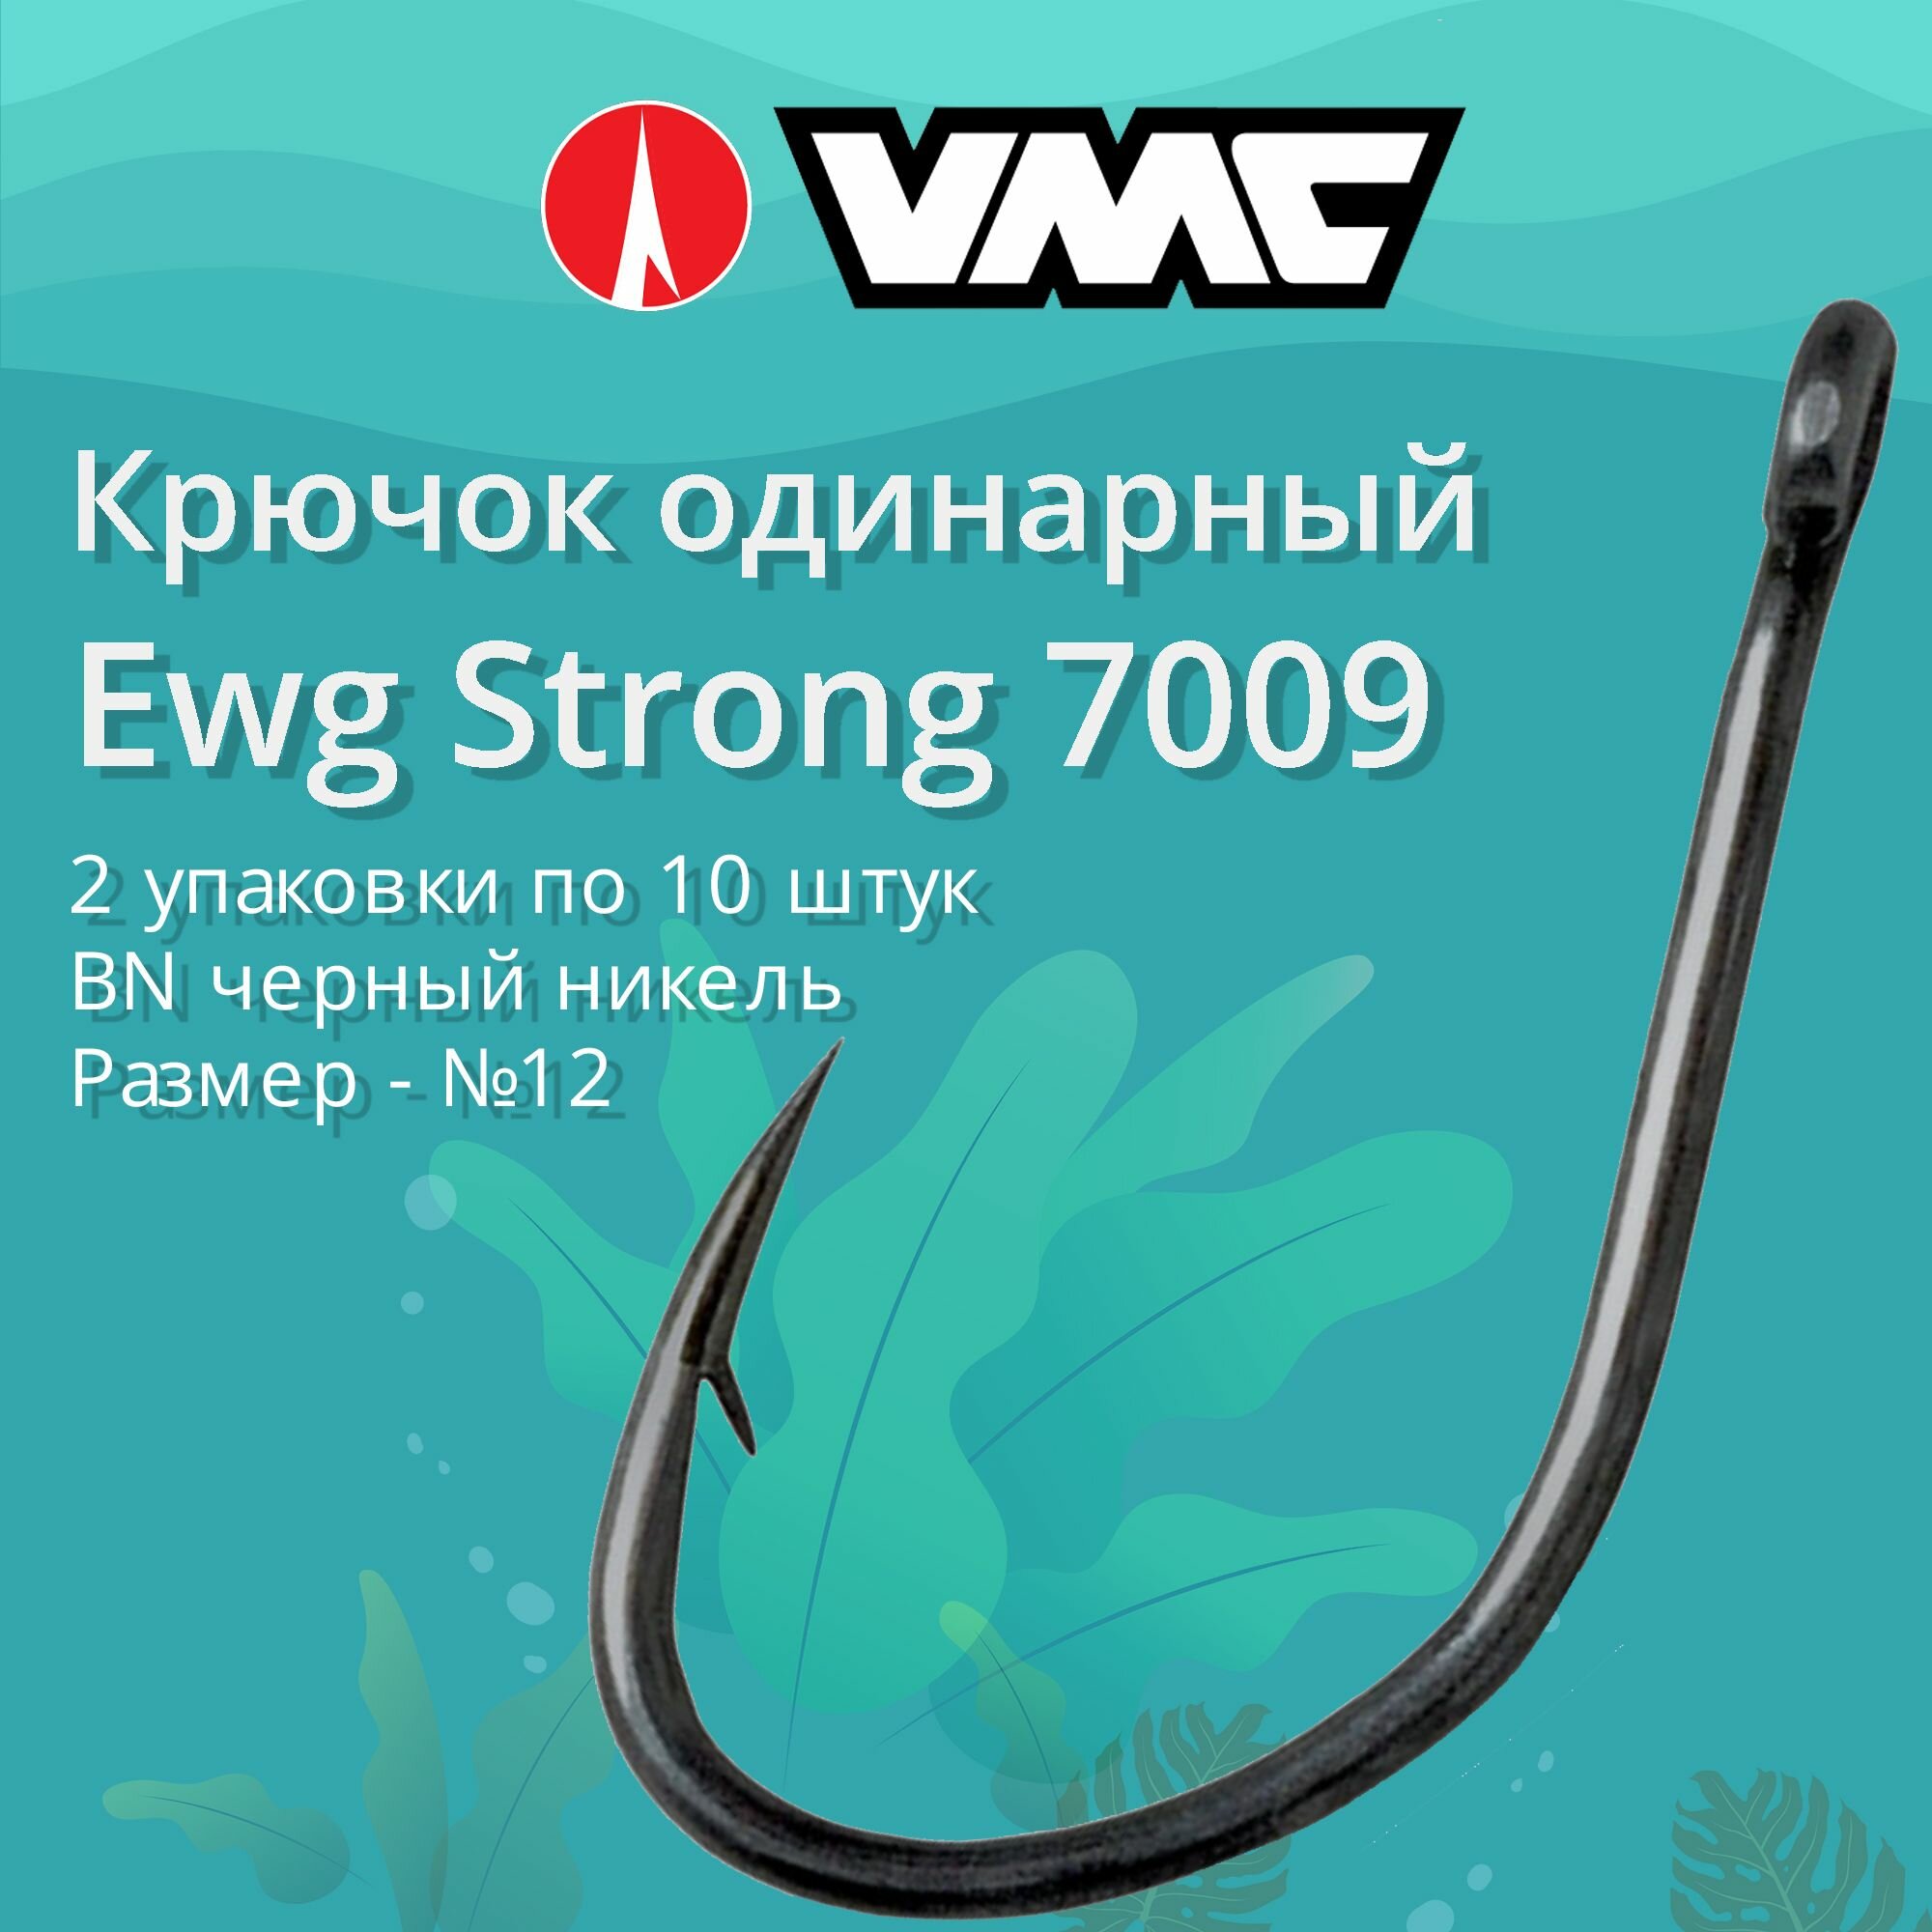 Крючки для рыбалки (одинарный) VMC Ewg Strong 7009 BN (черн. никель) №12 2 упаковки по 10 штук